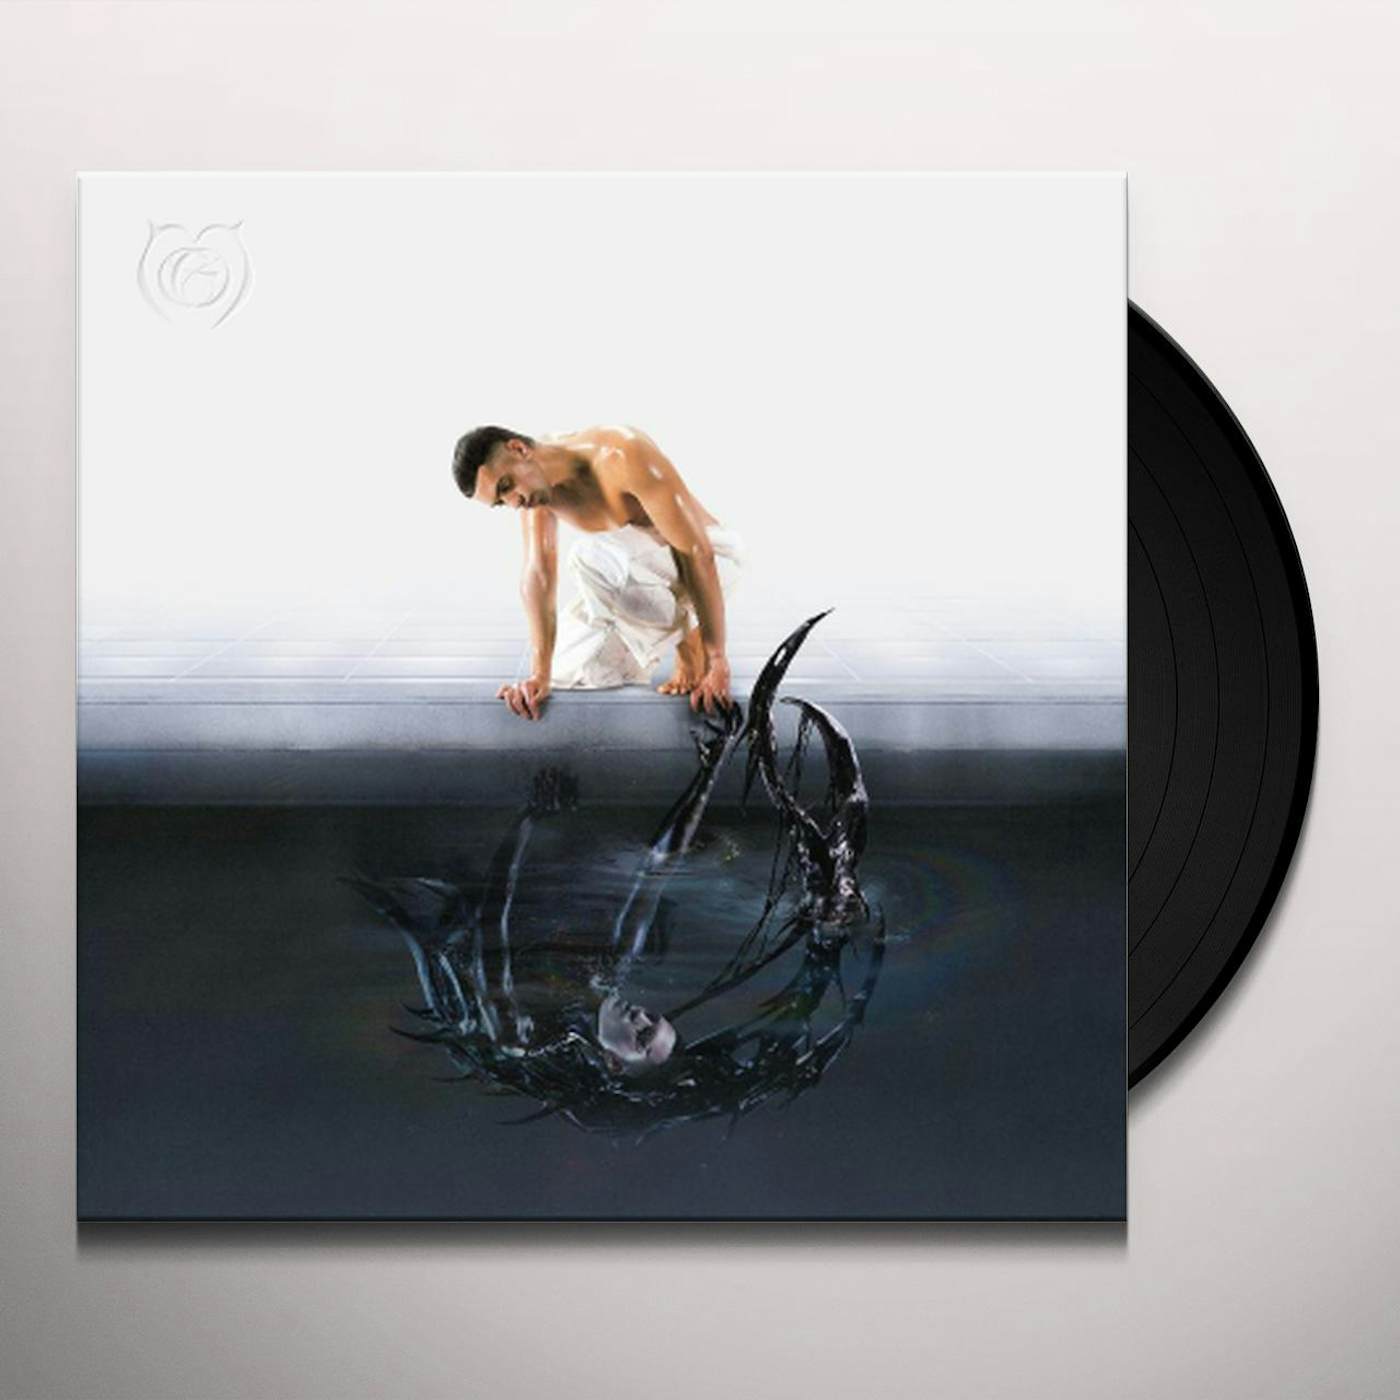 RUSH ! (ARE U COMING ?) Exclusivité Fnac Vinyle avec éclaboussures Roses -  Måneskin - Vinyle album - Achat & prix